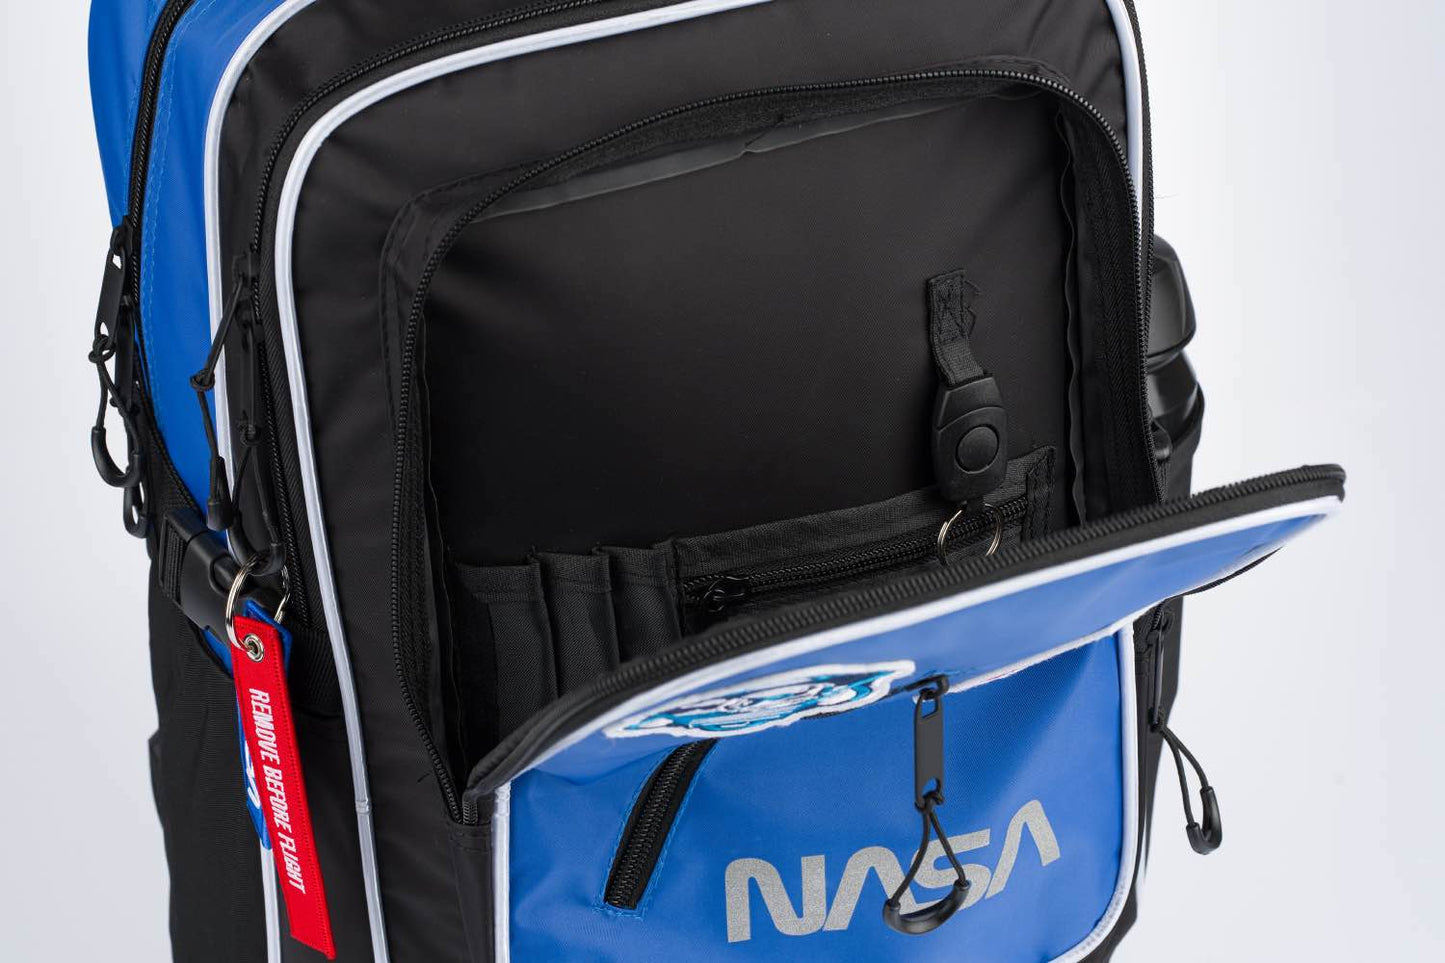 Školský batoh Cubic NASA